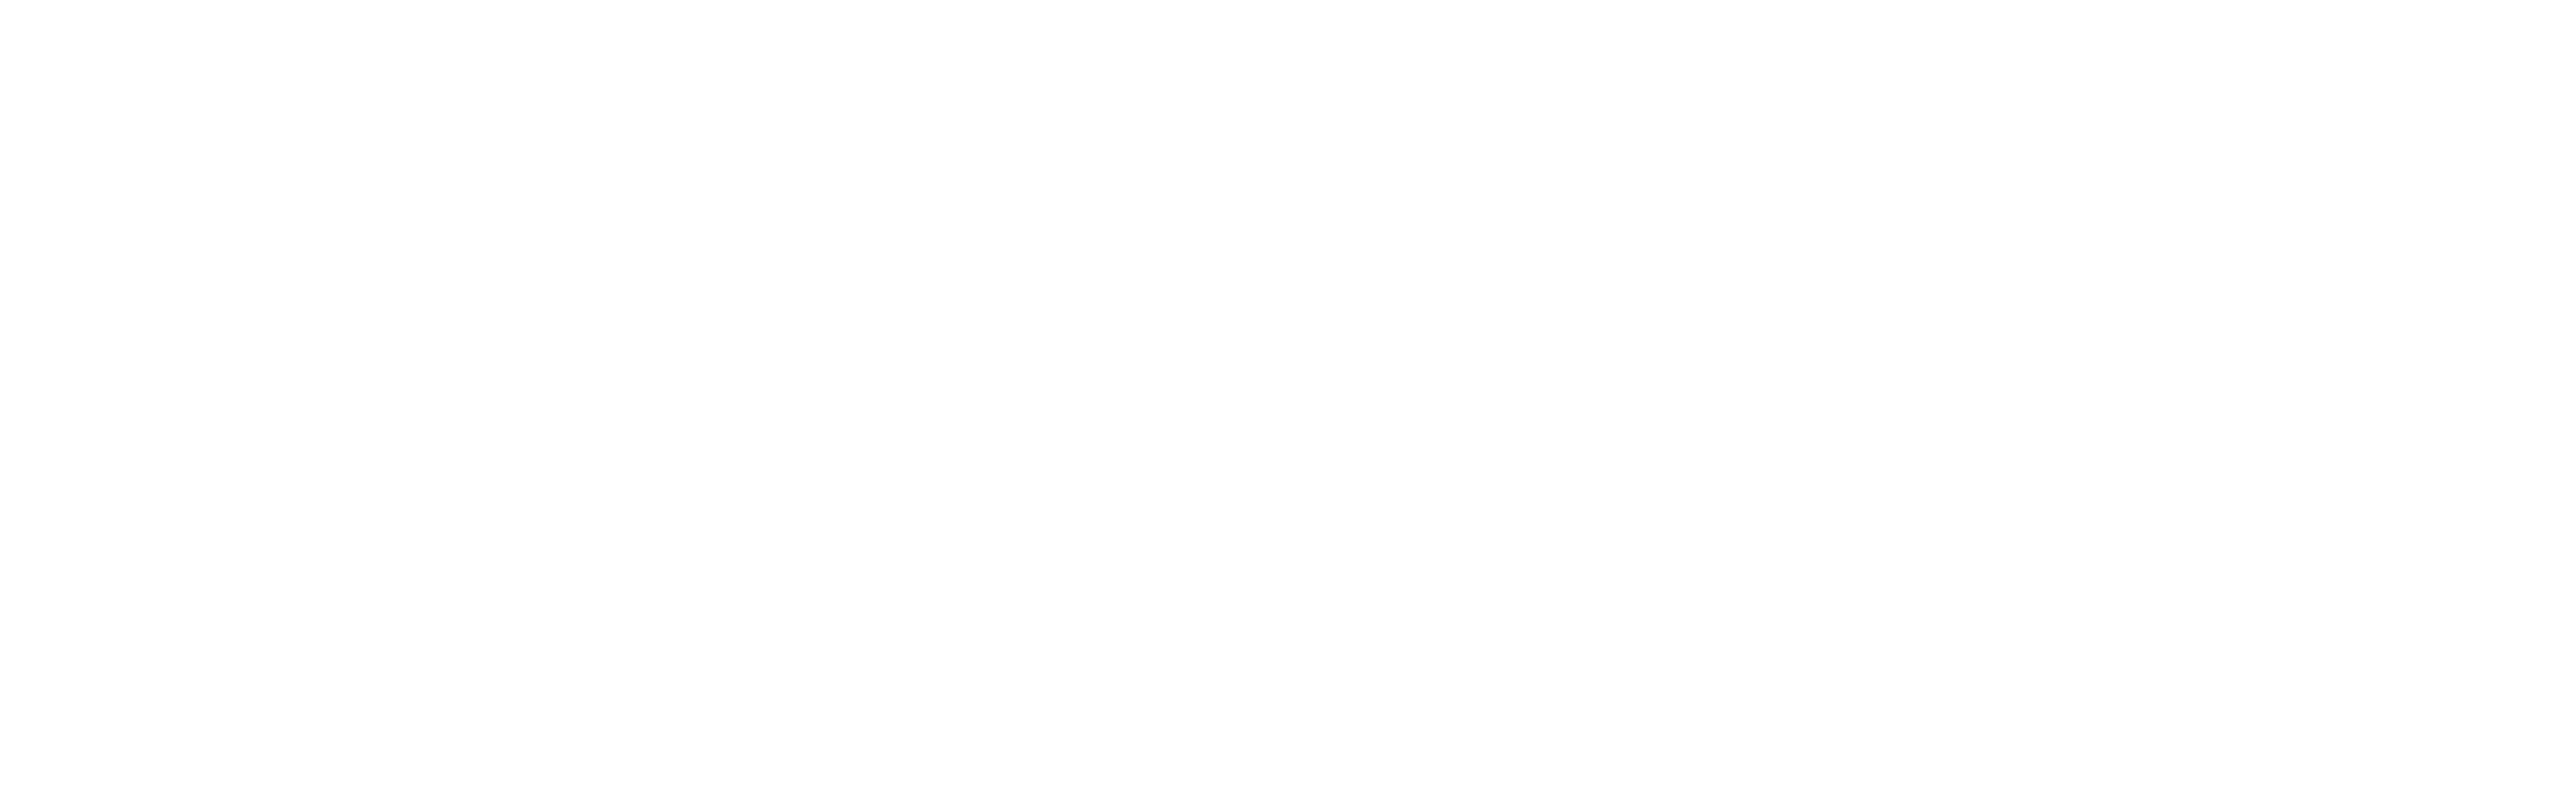 Inicio - Camara Oficial de Comercio, y Servicios de Palencia - COCIPA